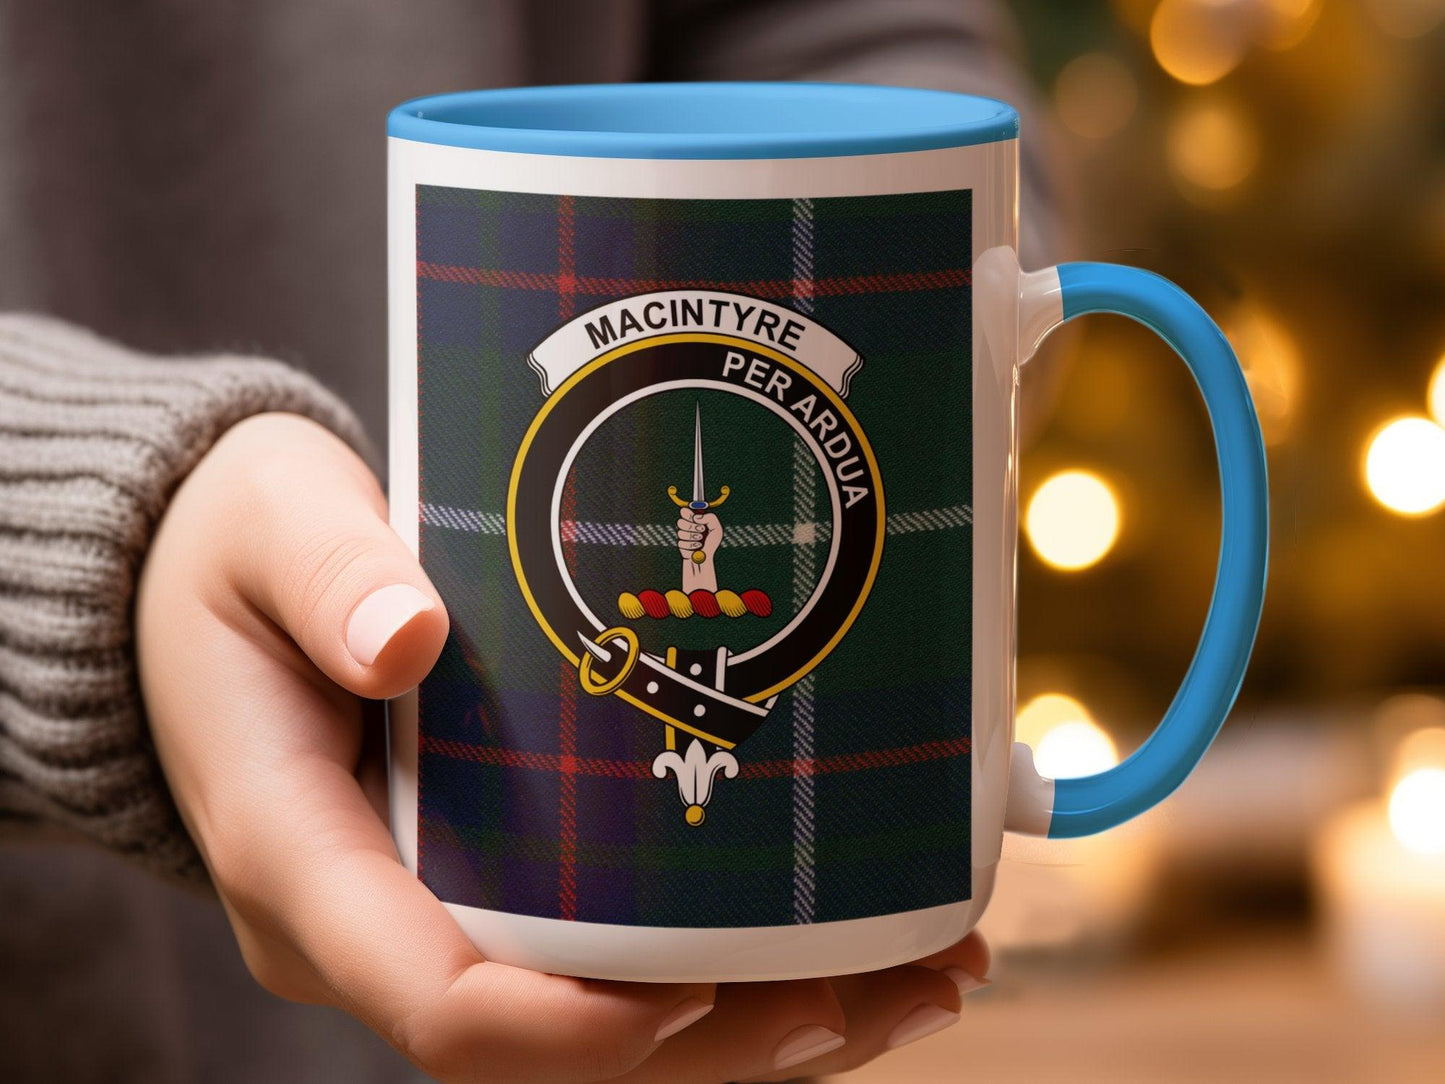 MacIntyre Crest Clan Tartan Scottish Plaid Pattern Mug - Living Stone Gifts